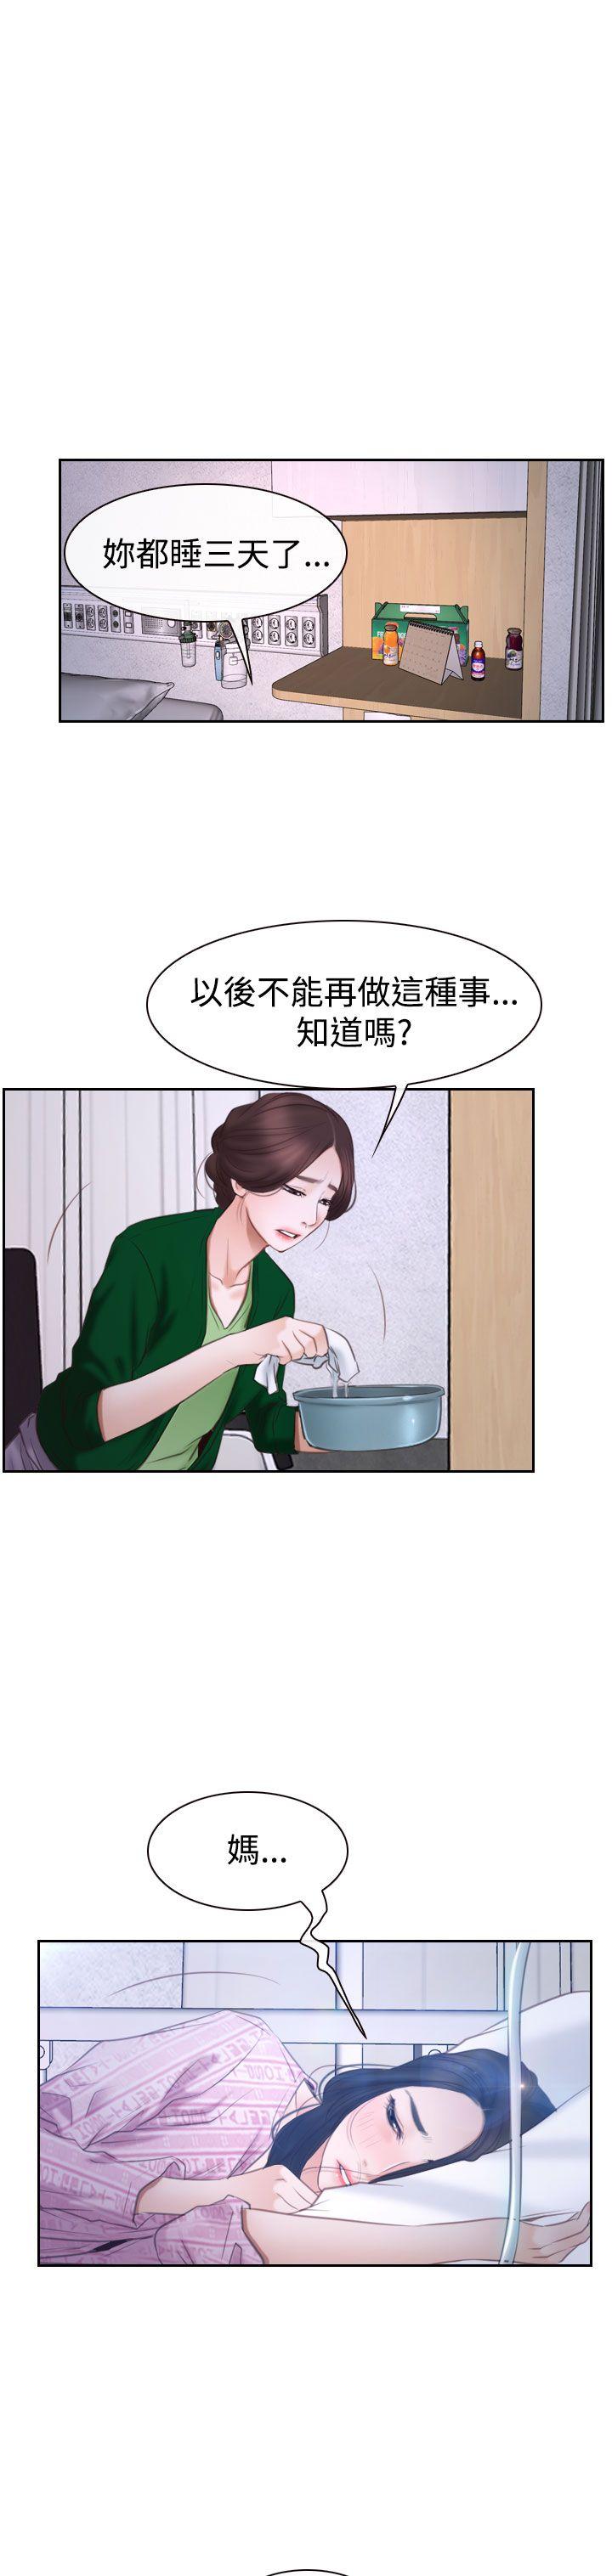 韩国污漫画 猜不透的心 第42话 22